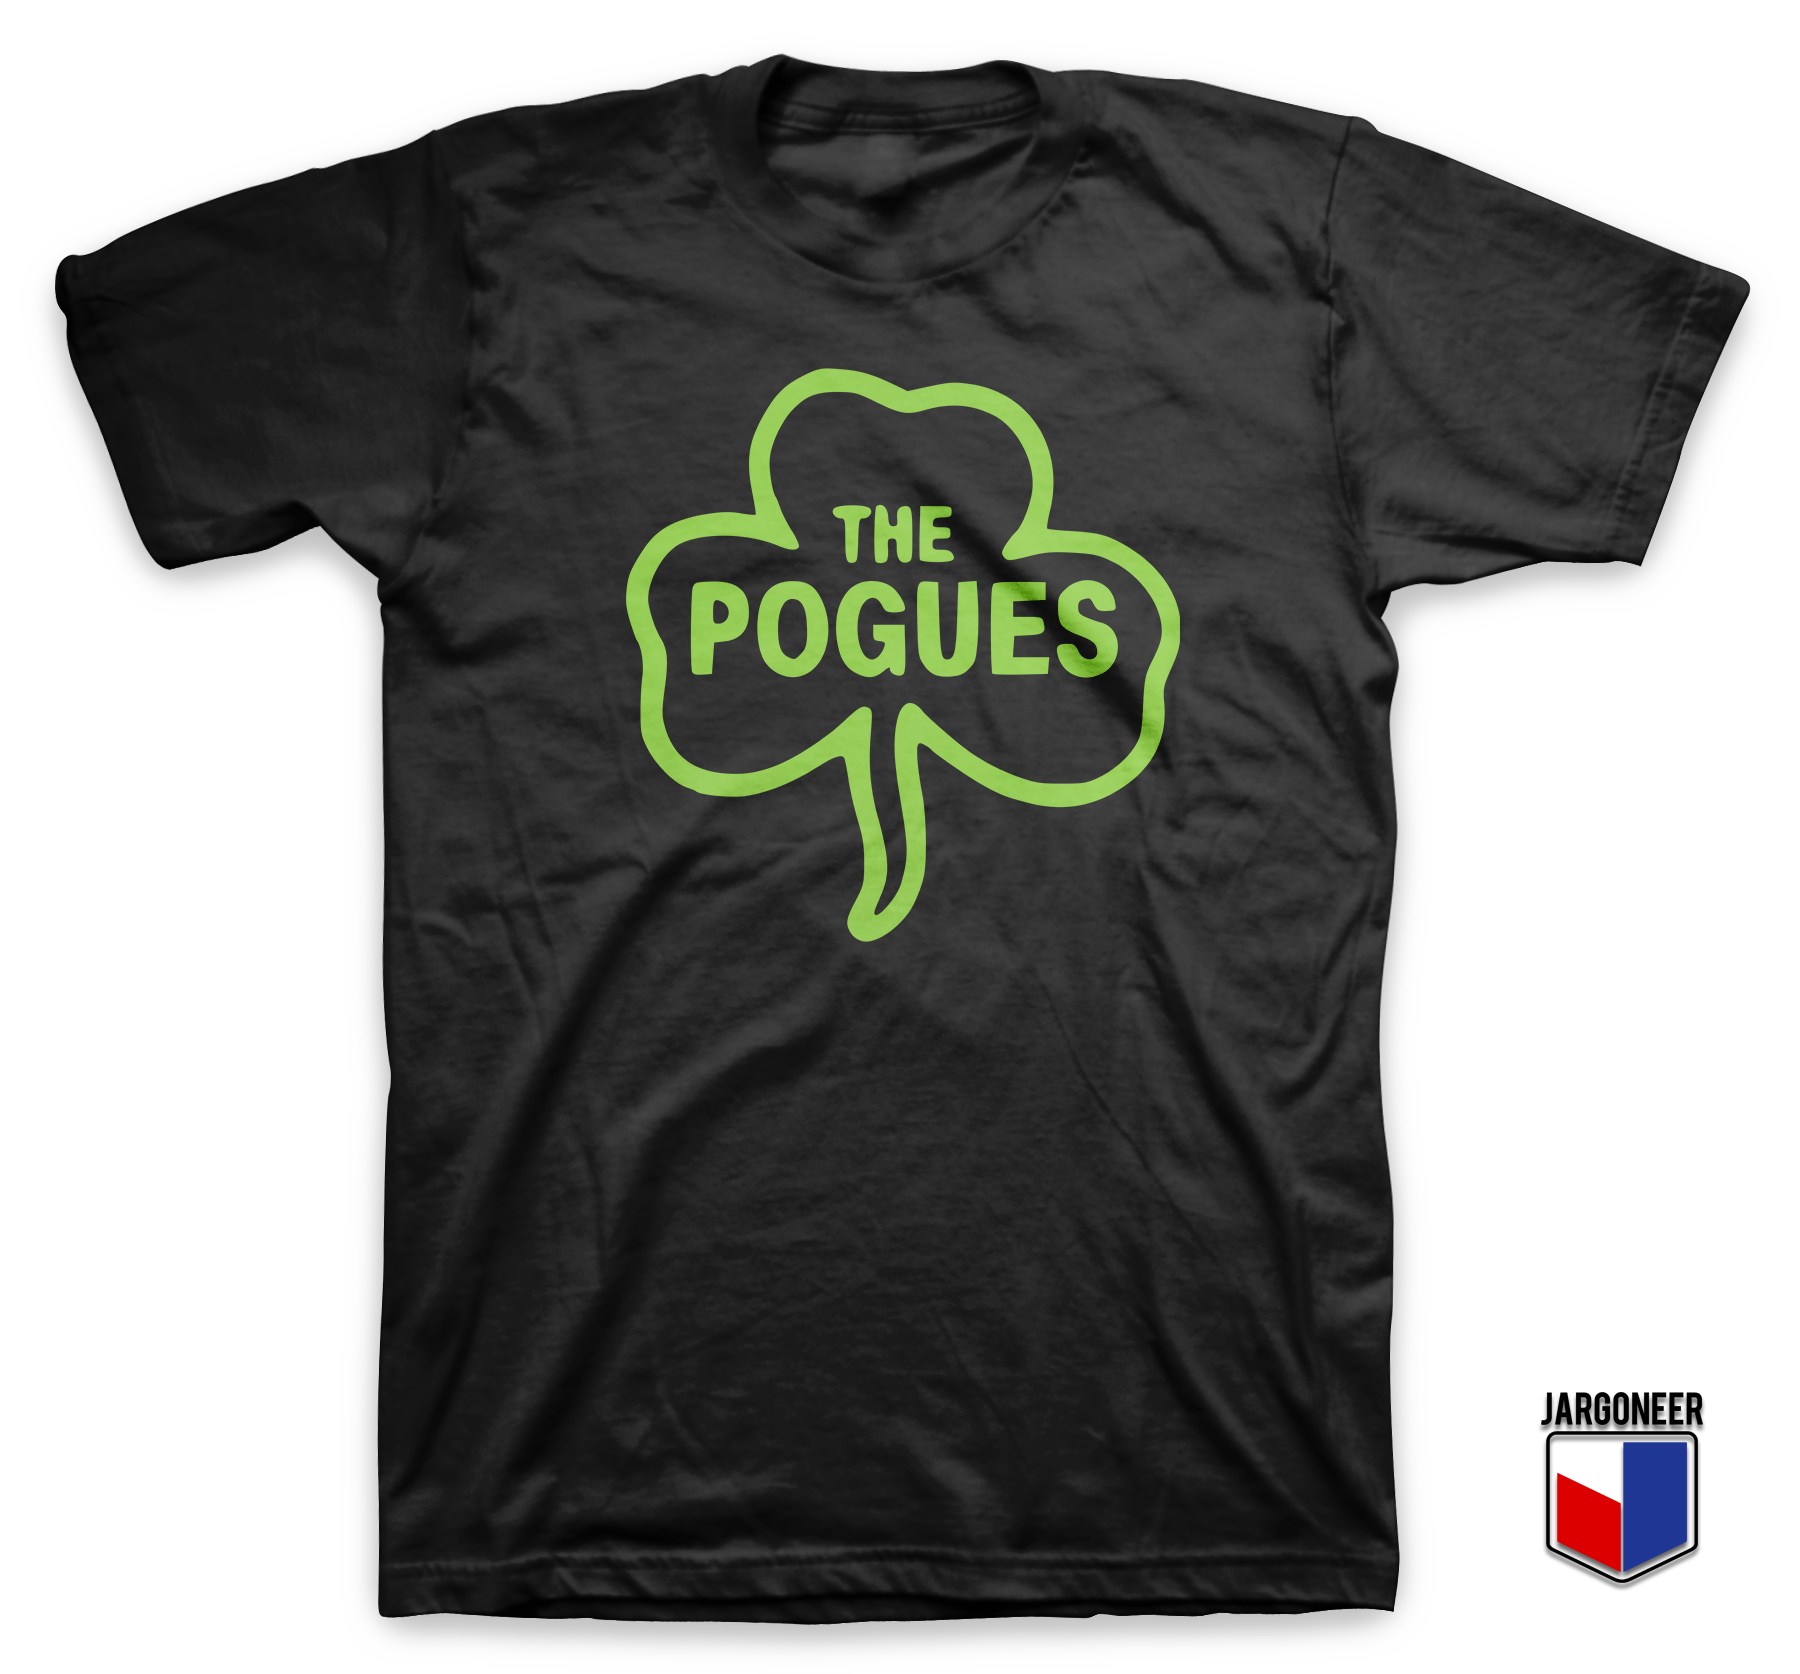 The Pogues Leafe Black T Shirt - Shop Unique Graphic Cool Shirt Designs